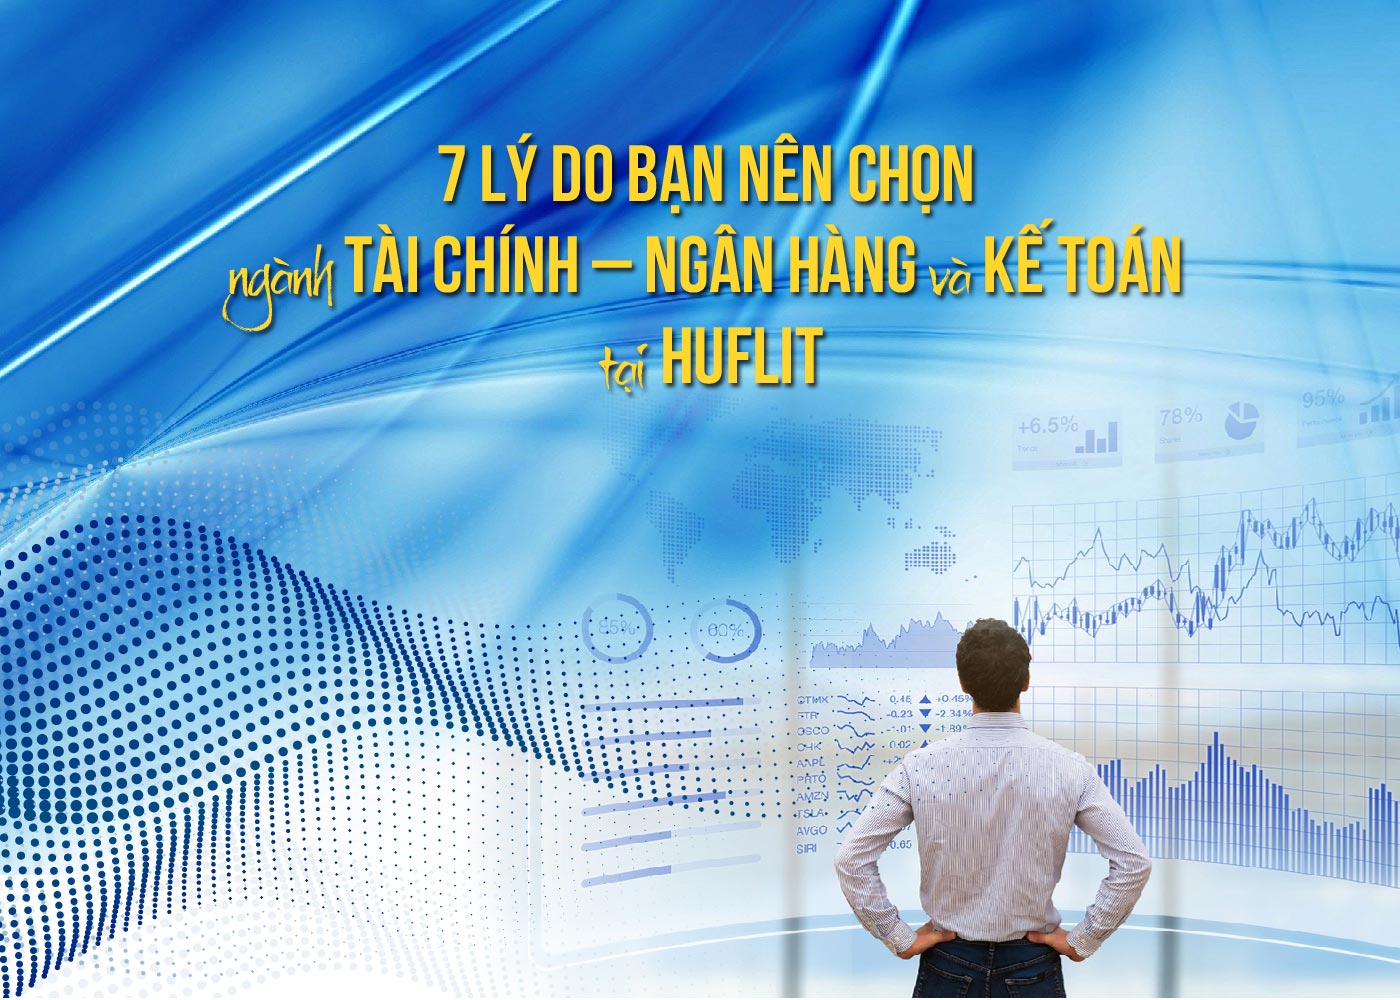 7 lý do bạn nên chọn ngành Tài chính - Ngân hàng và Kế toán tại HUFLIT - Ảnh 1